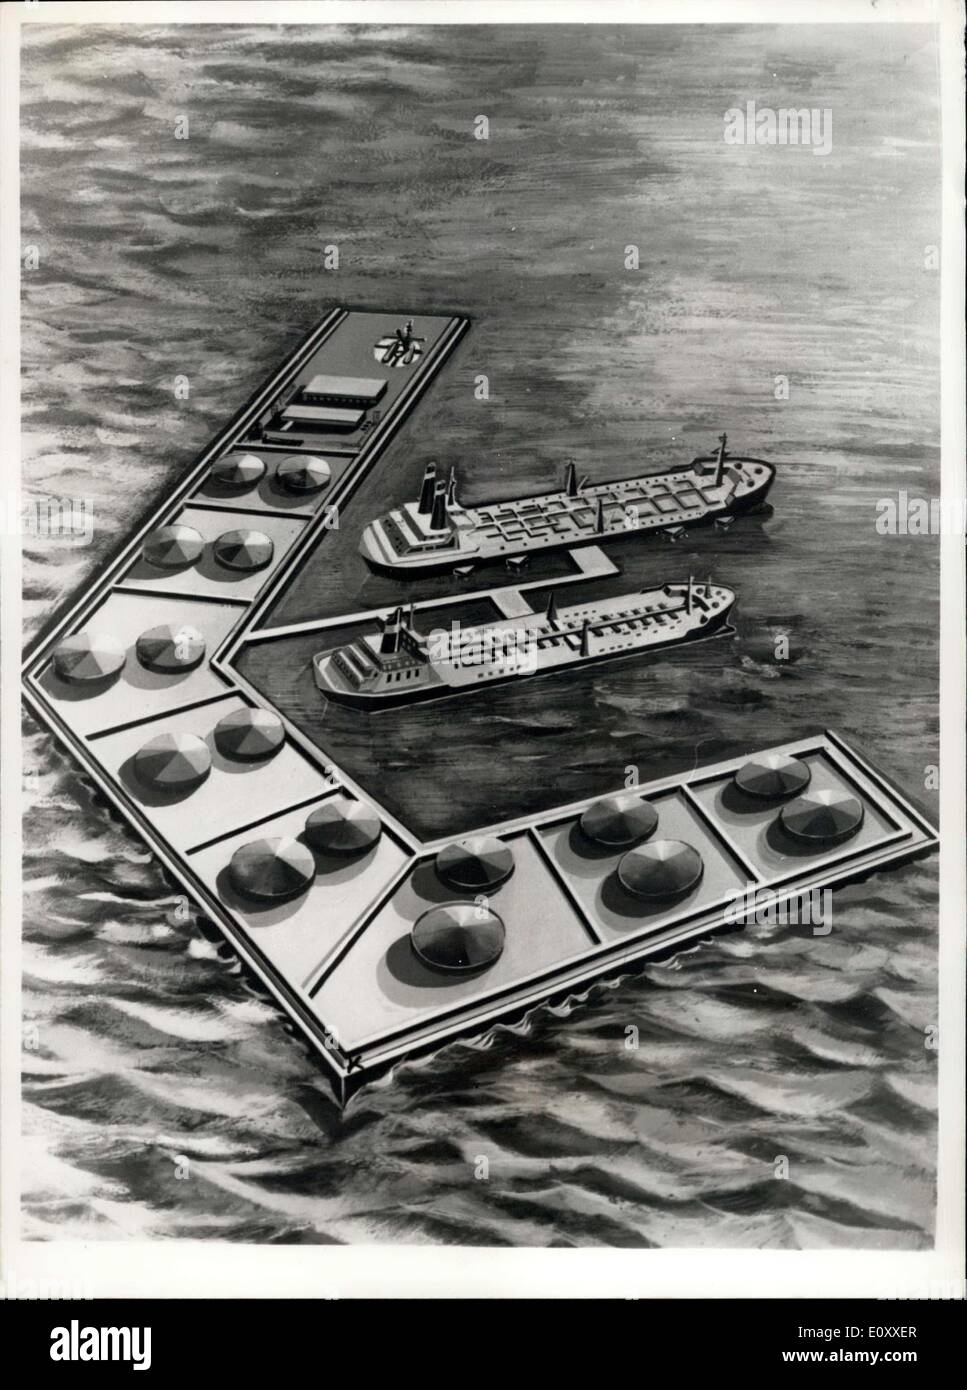 Mar 15, 1968 - Porto per navi cisterna gigante per essere costruito a Le Havre: i piani per la costruzione di un porto per superpetroliere vengono considerati da Le Havre delle autorità portuali. L'artista impressione sul futuro del porto. Foto Stock